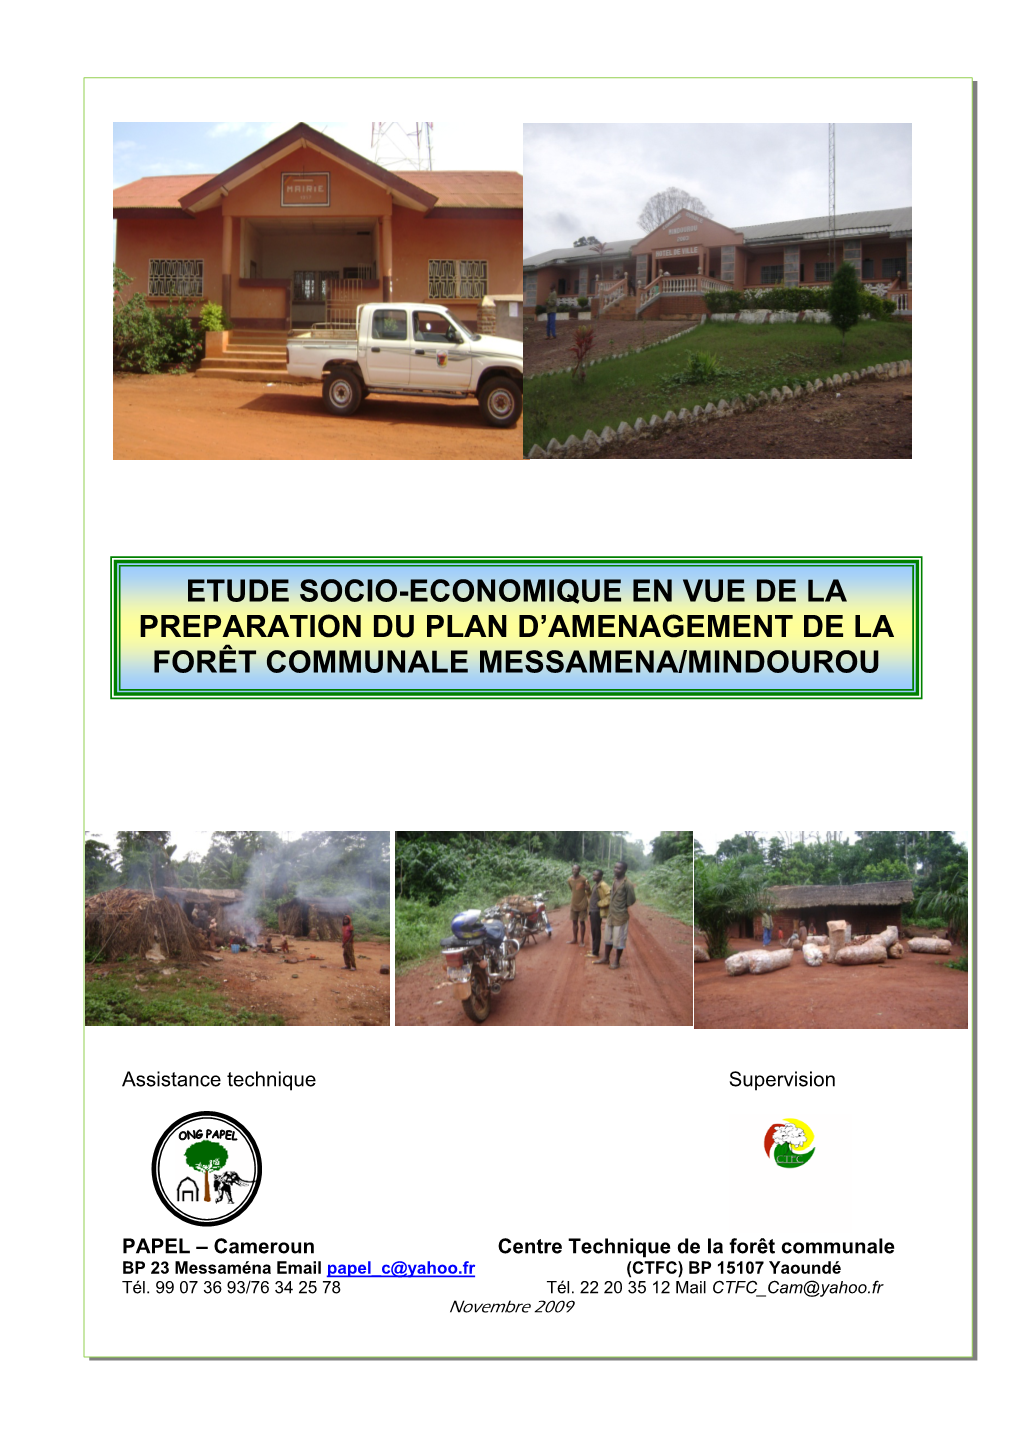 Etude Socio-Economique En Vue De La Preparation Du Plan D'amenagement De La Forêt Communale Messamena/Mindourou